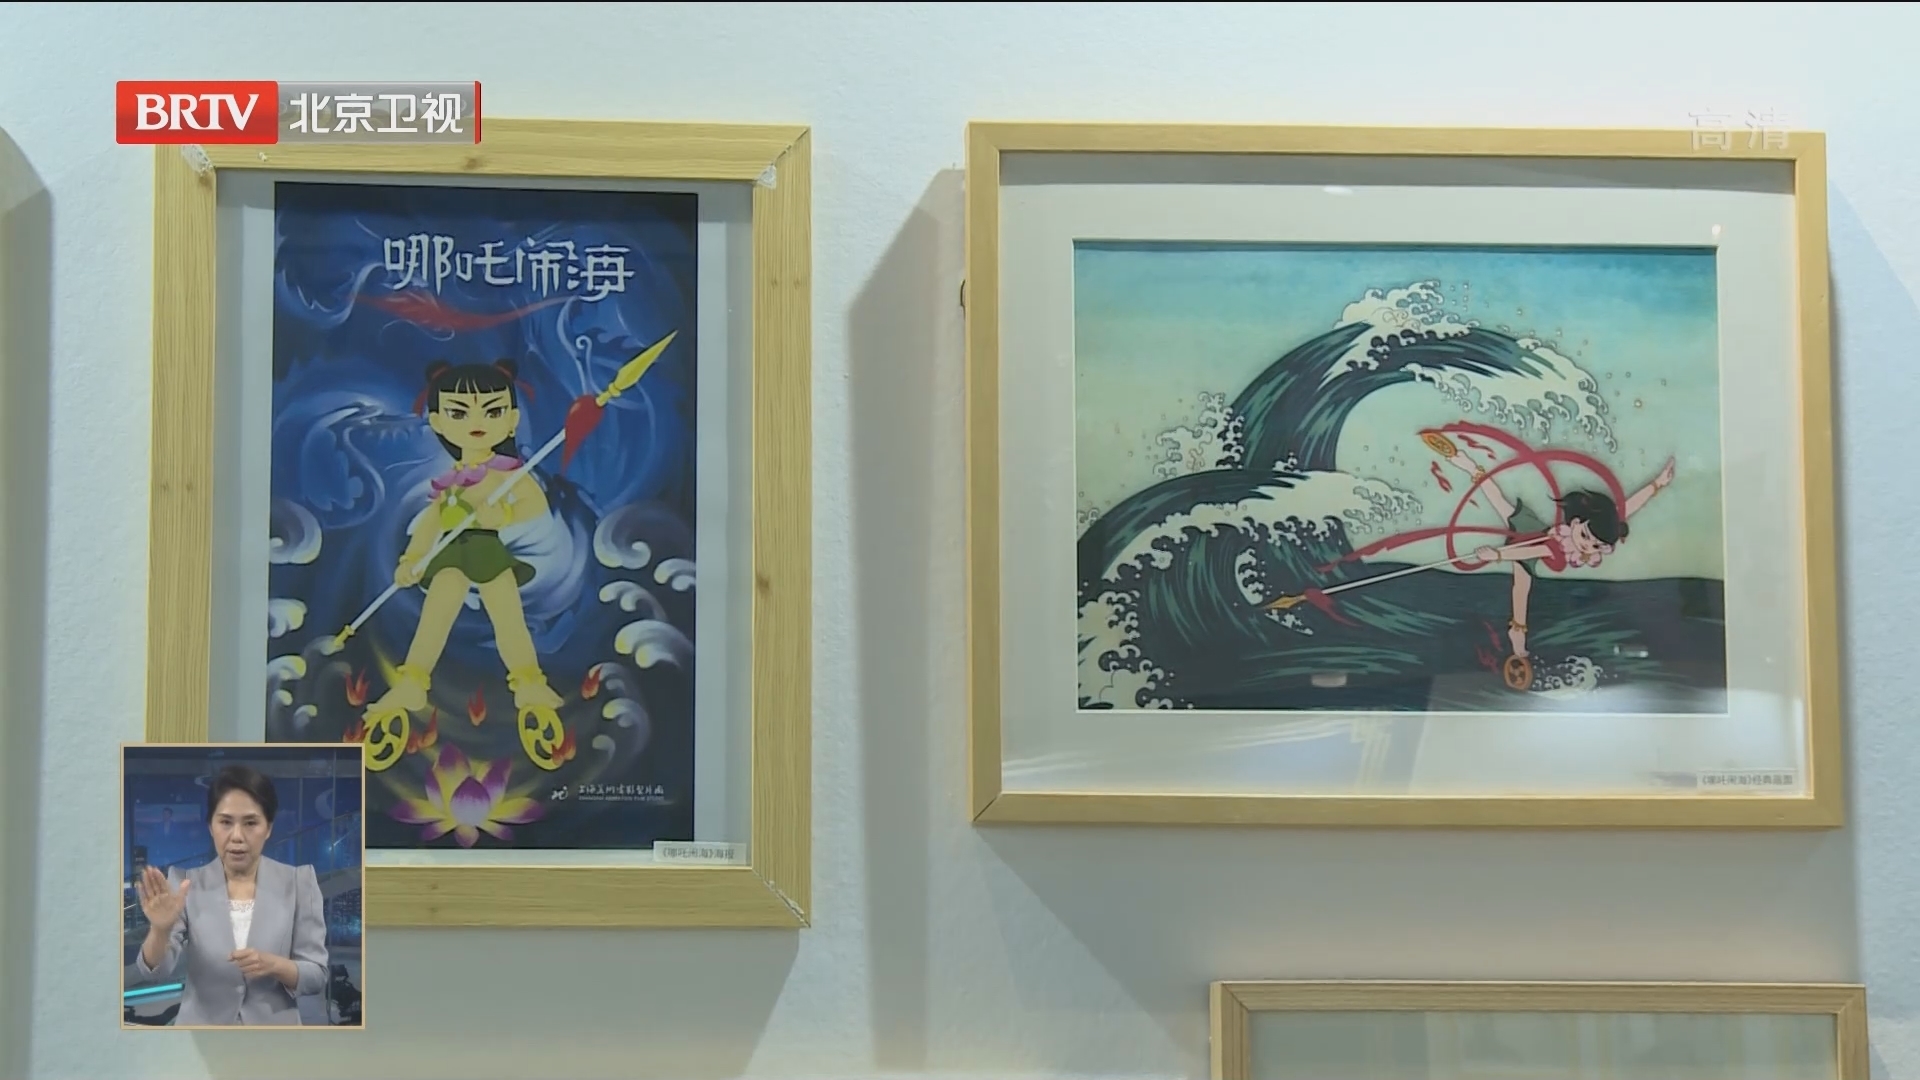 聚焦“动画百年” 首届北京动画周启动